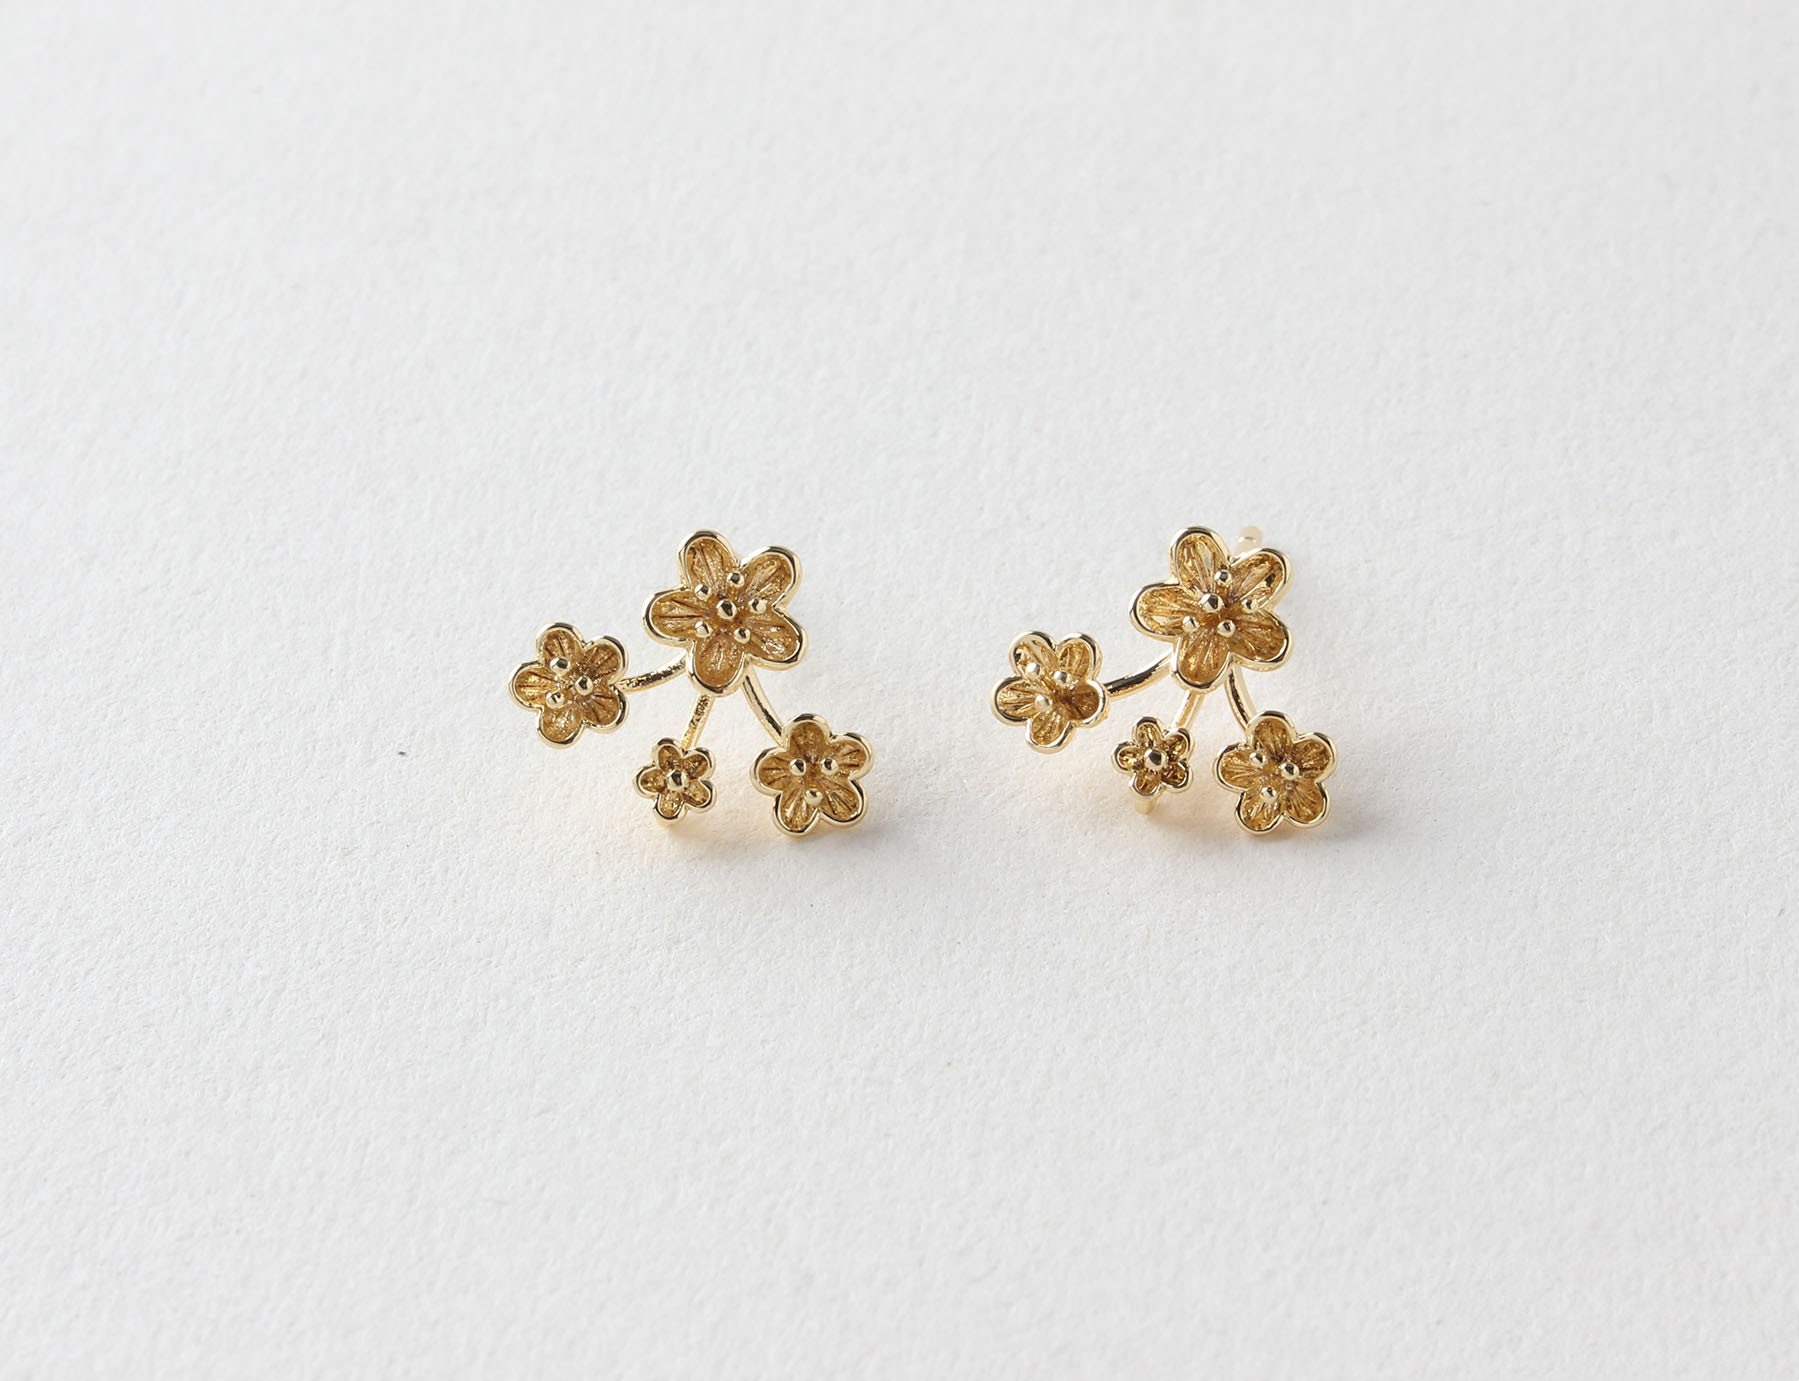 2/6 Piece Flower Charm Earrings, Earring Findings For Jewelry